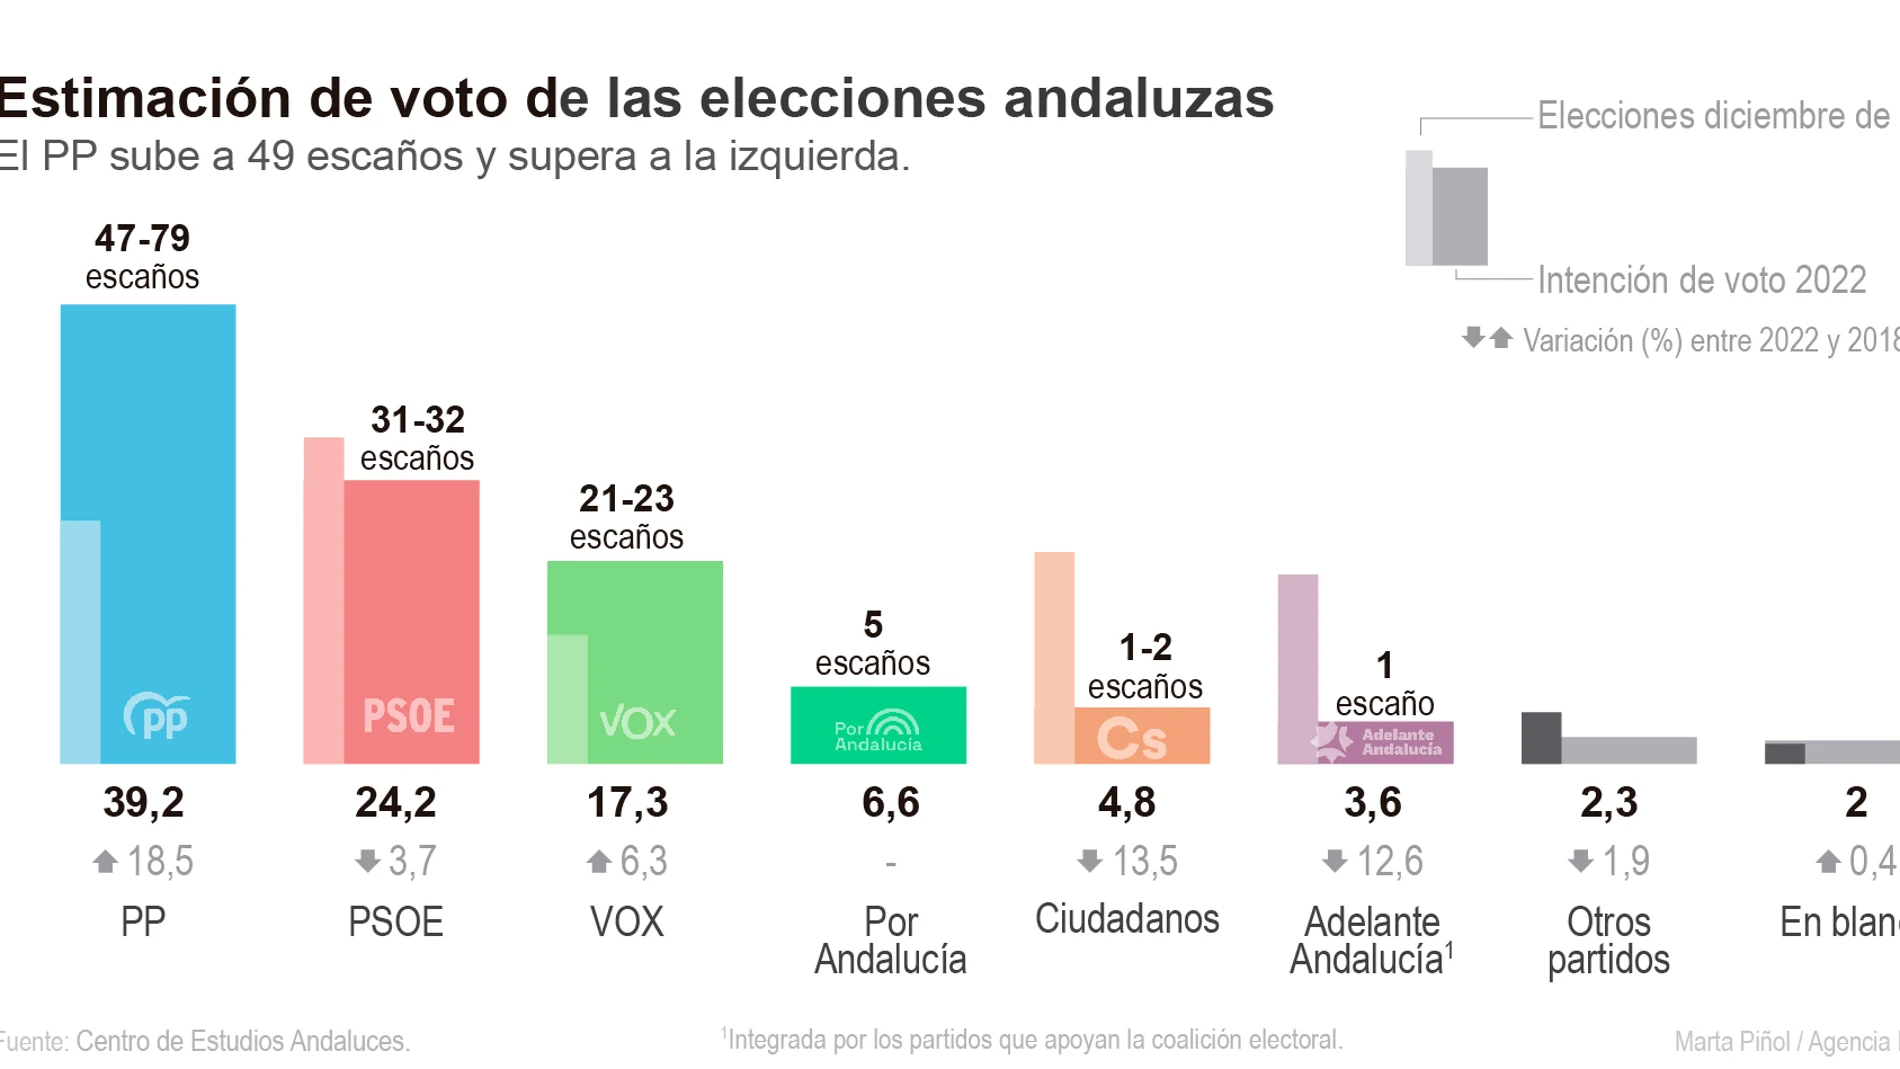 Datos del CIS andaluz para las elecciones en Andalucía